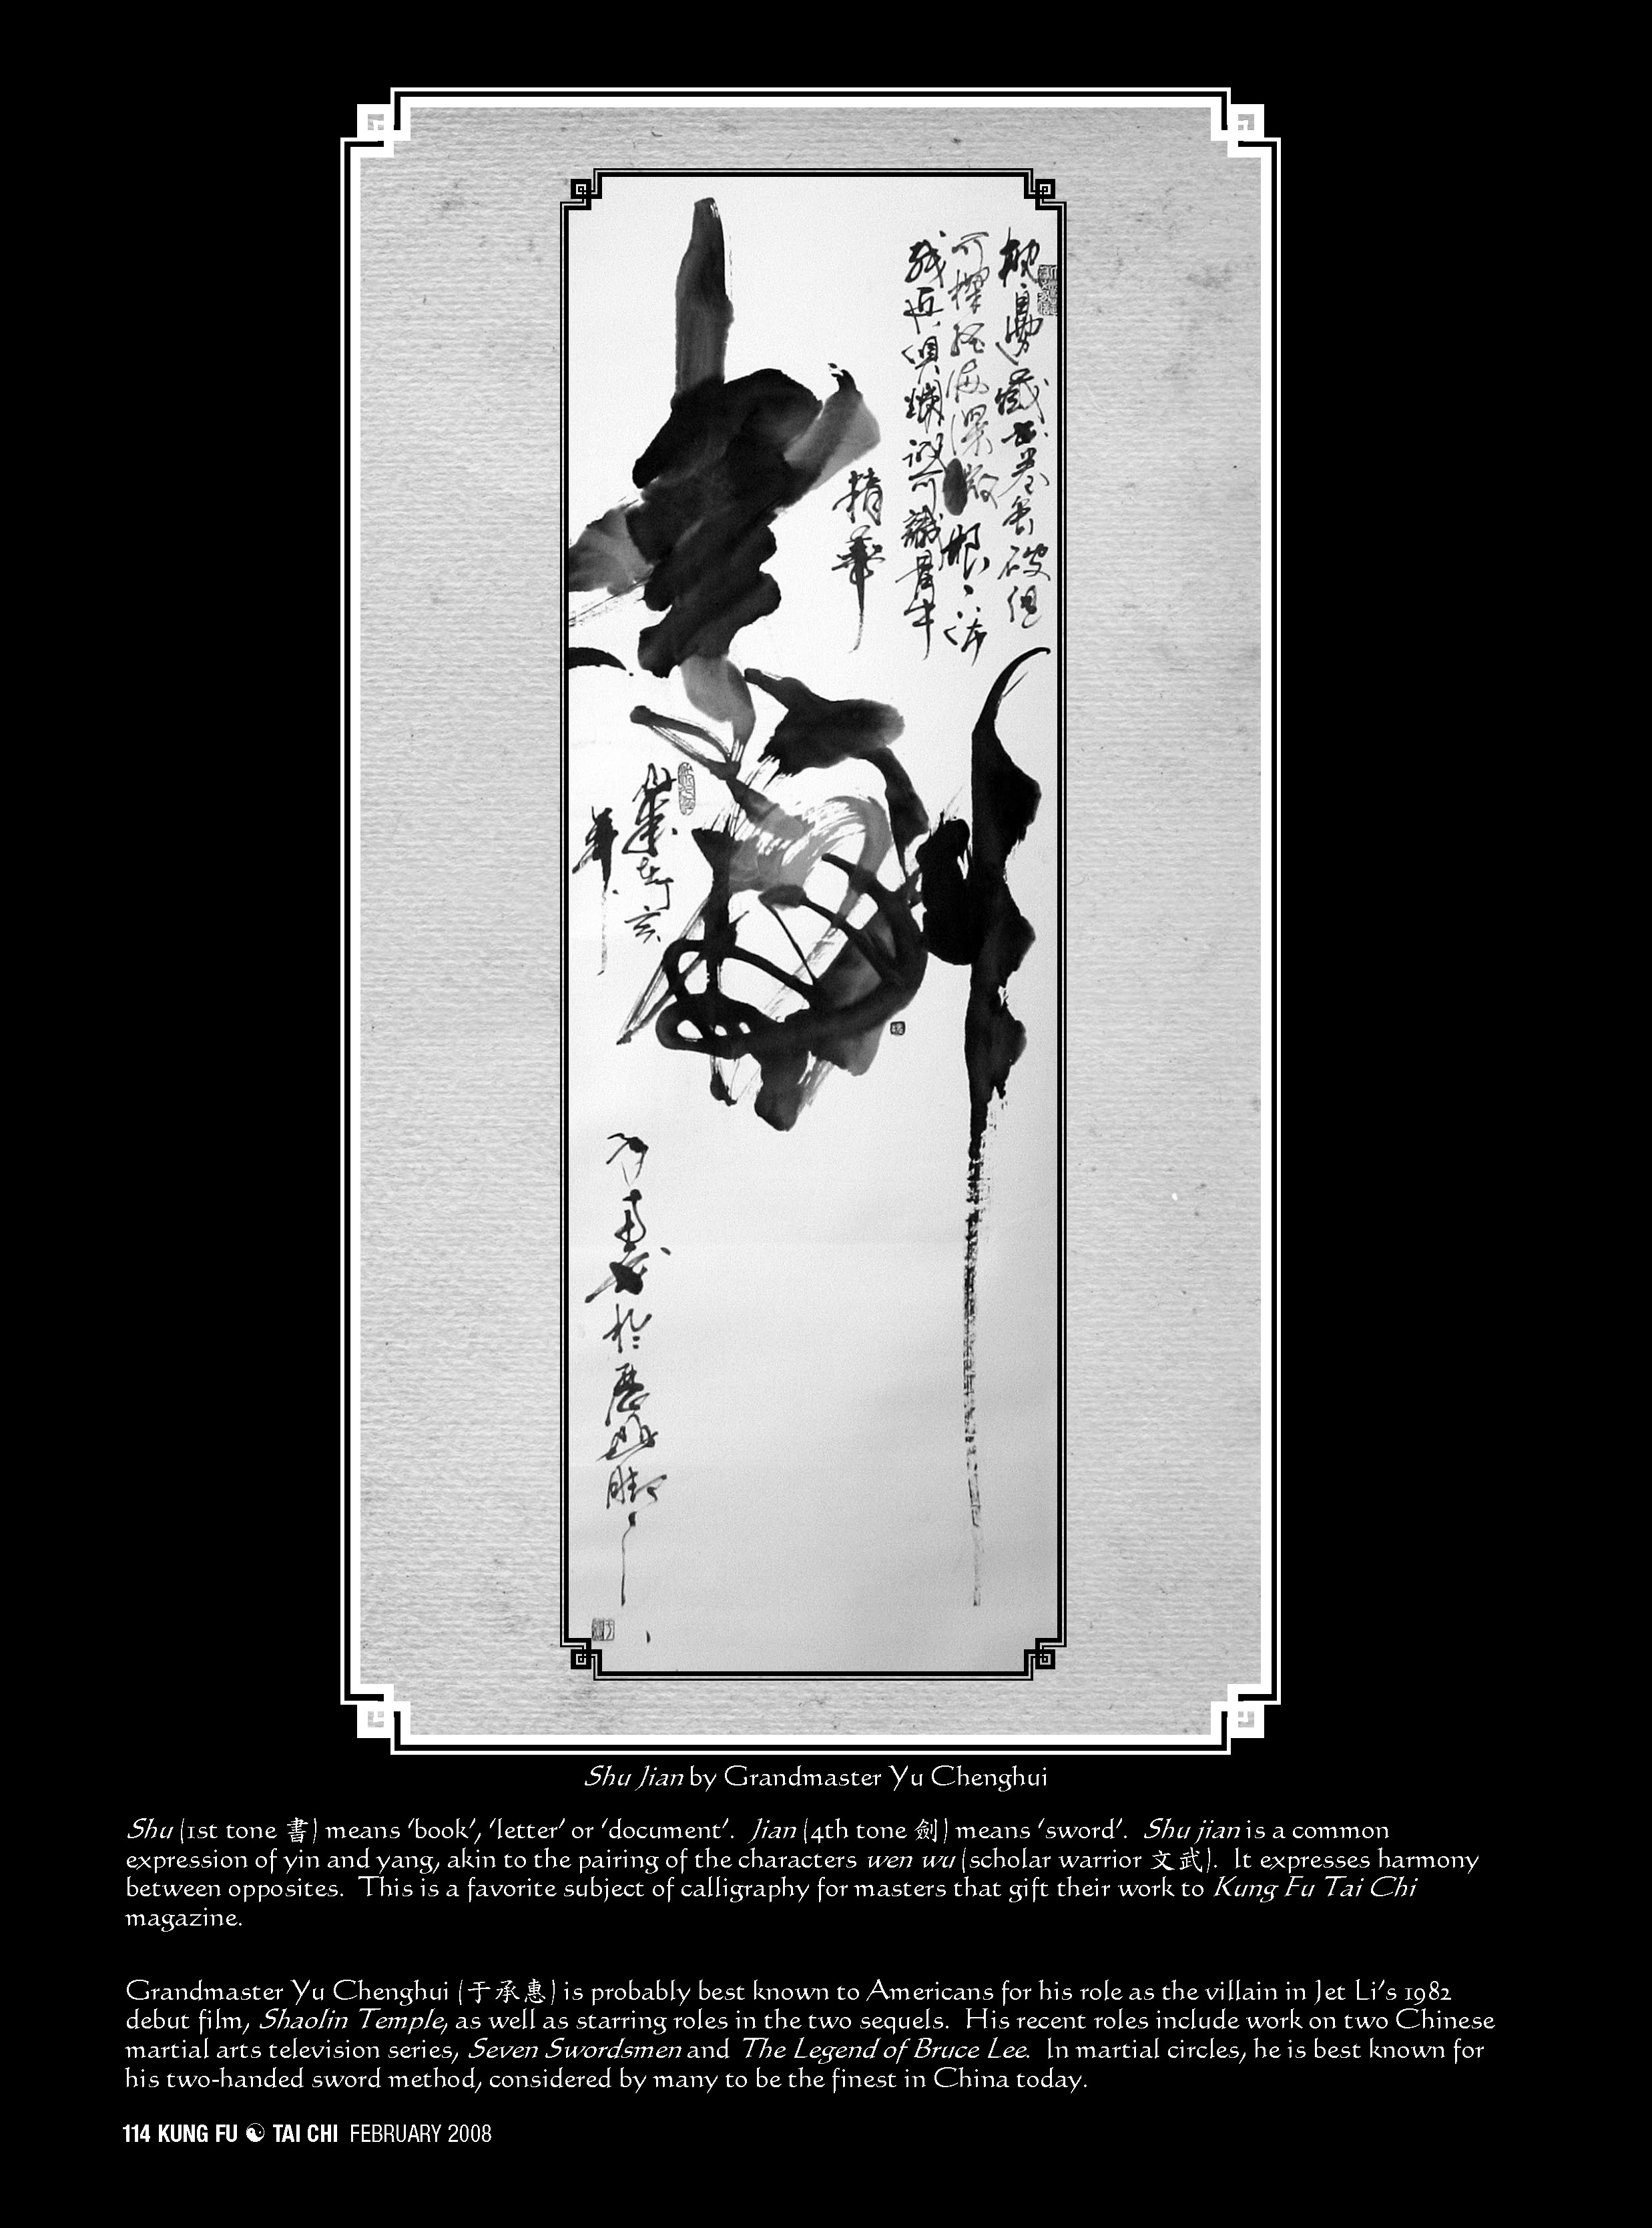 Calligraphy by Grandmaster Yu Chenghui